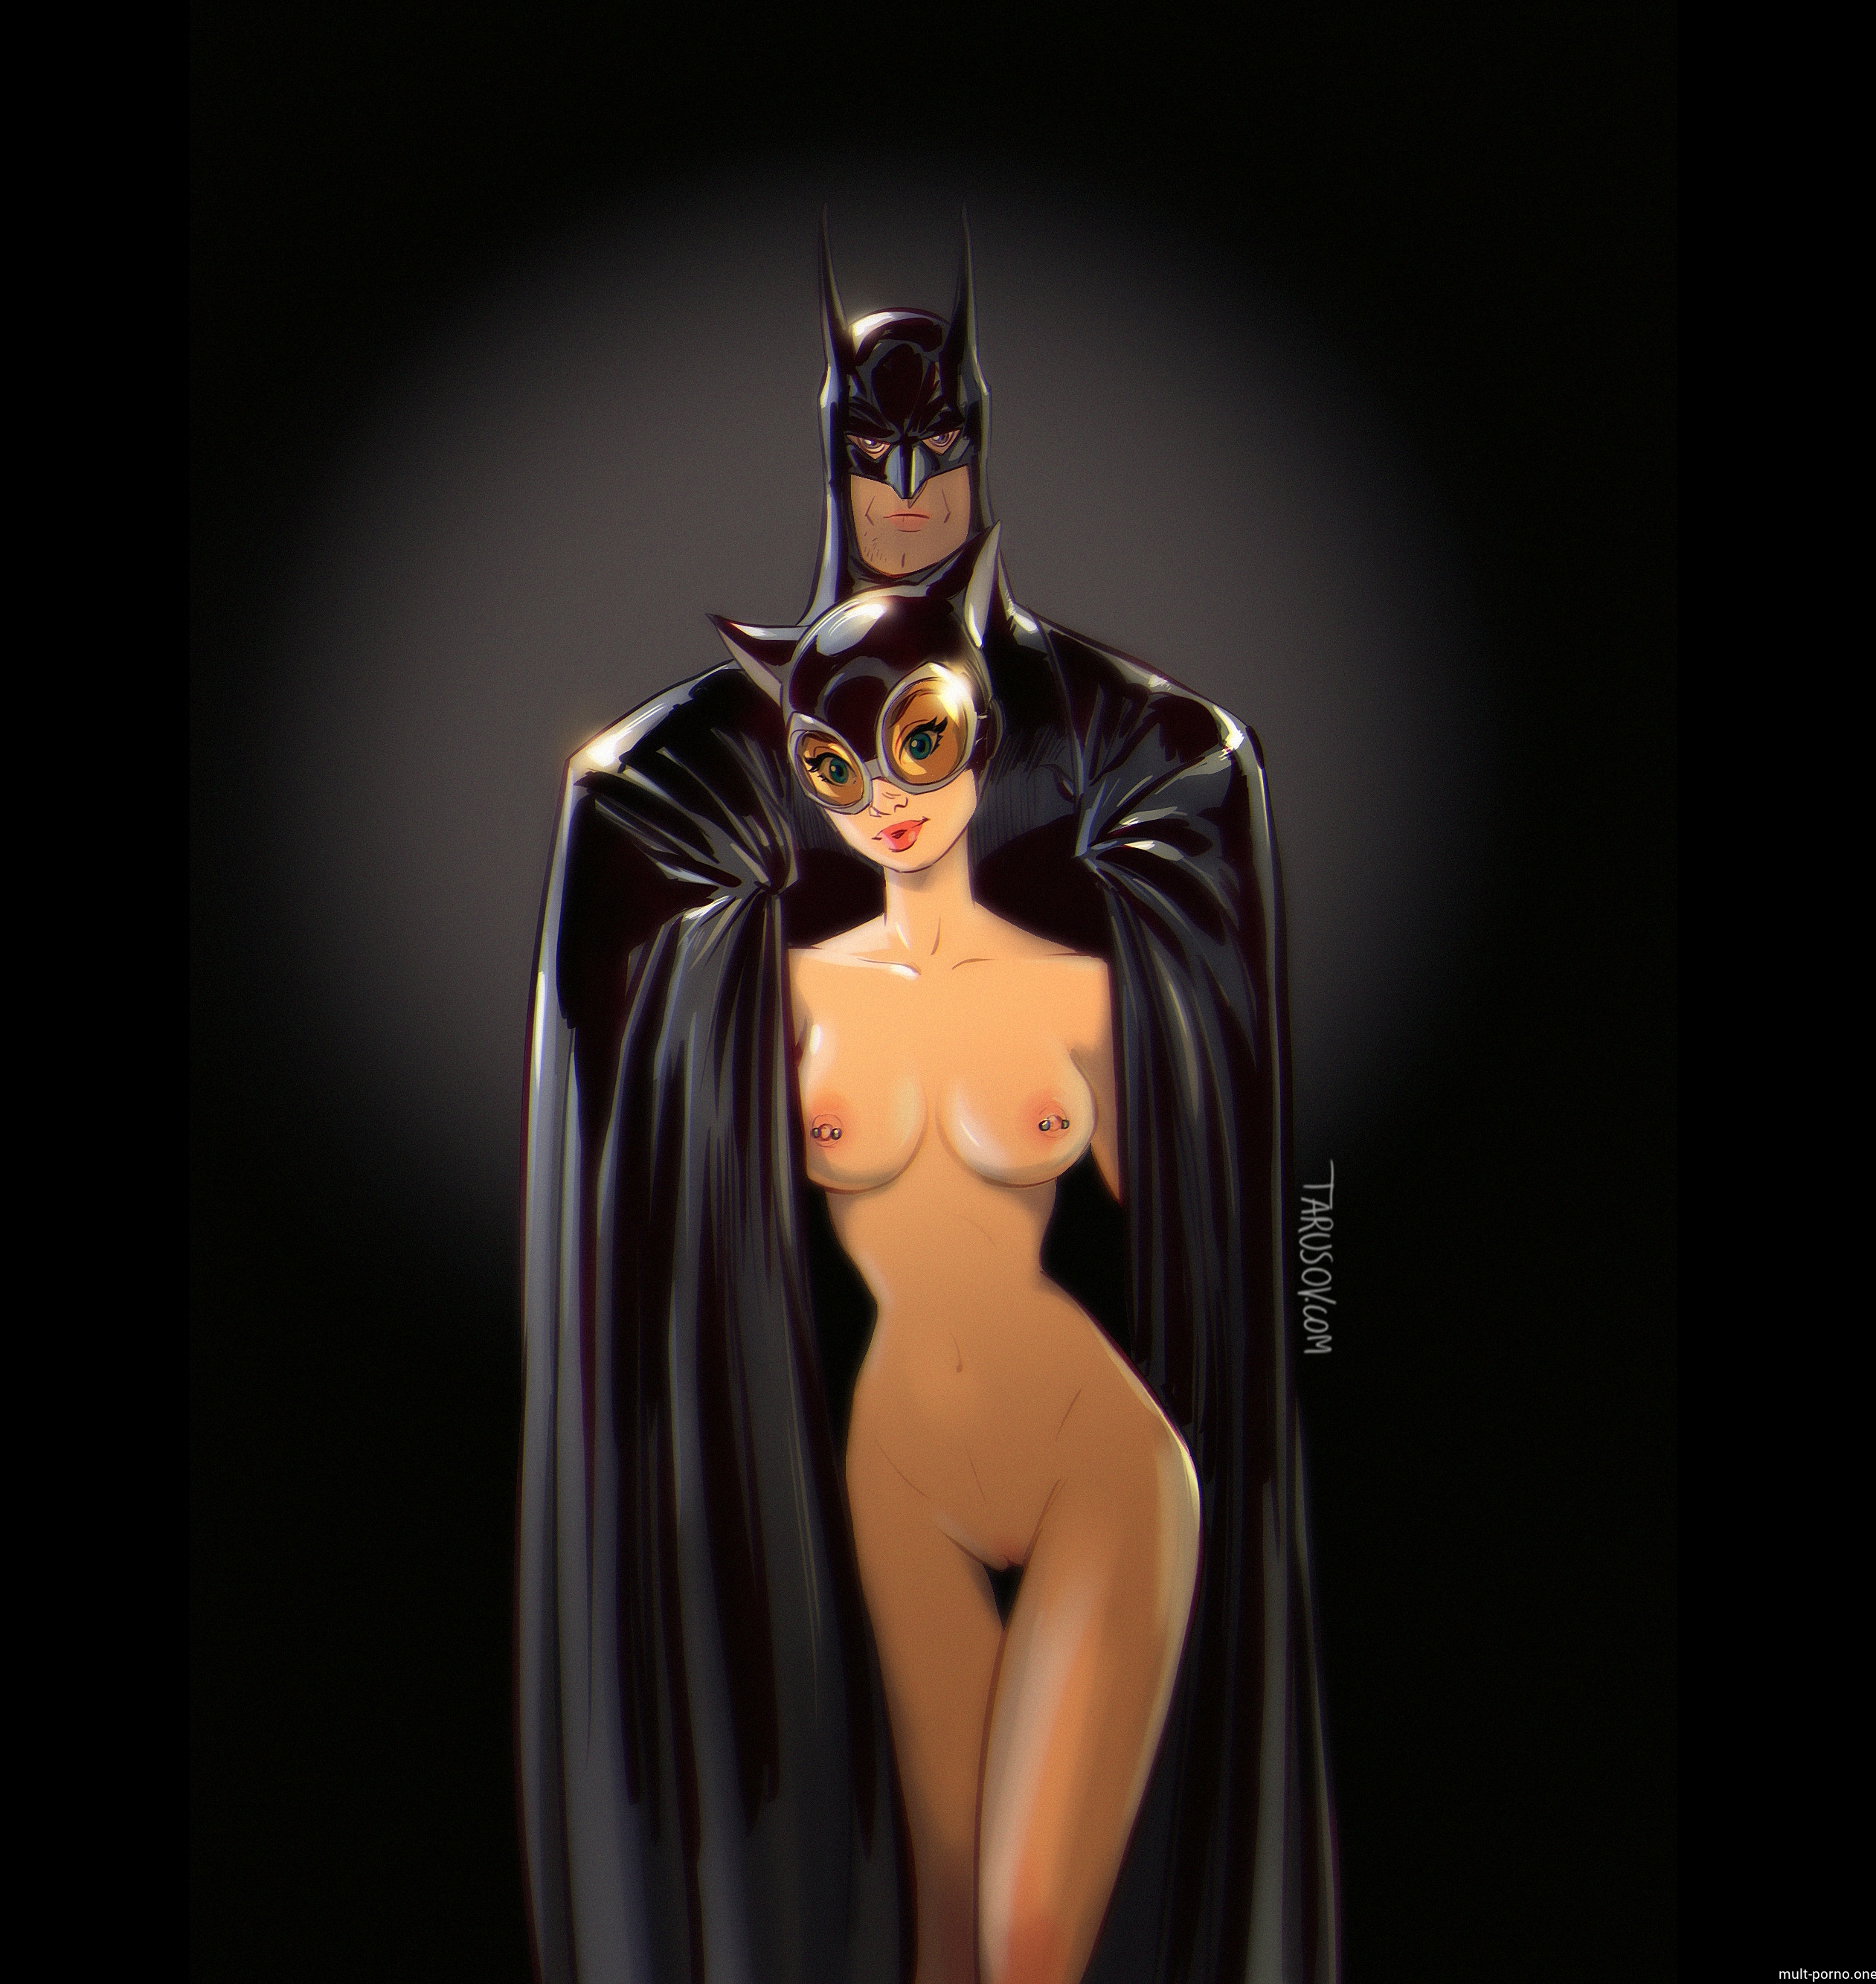 Бэтмен трахает сочную попку Женщины-кошки прямо в костюме (+порно комикс)